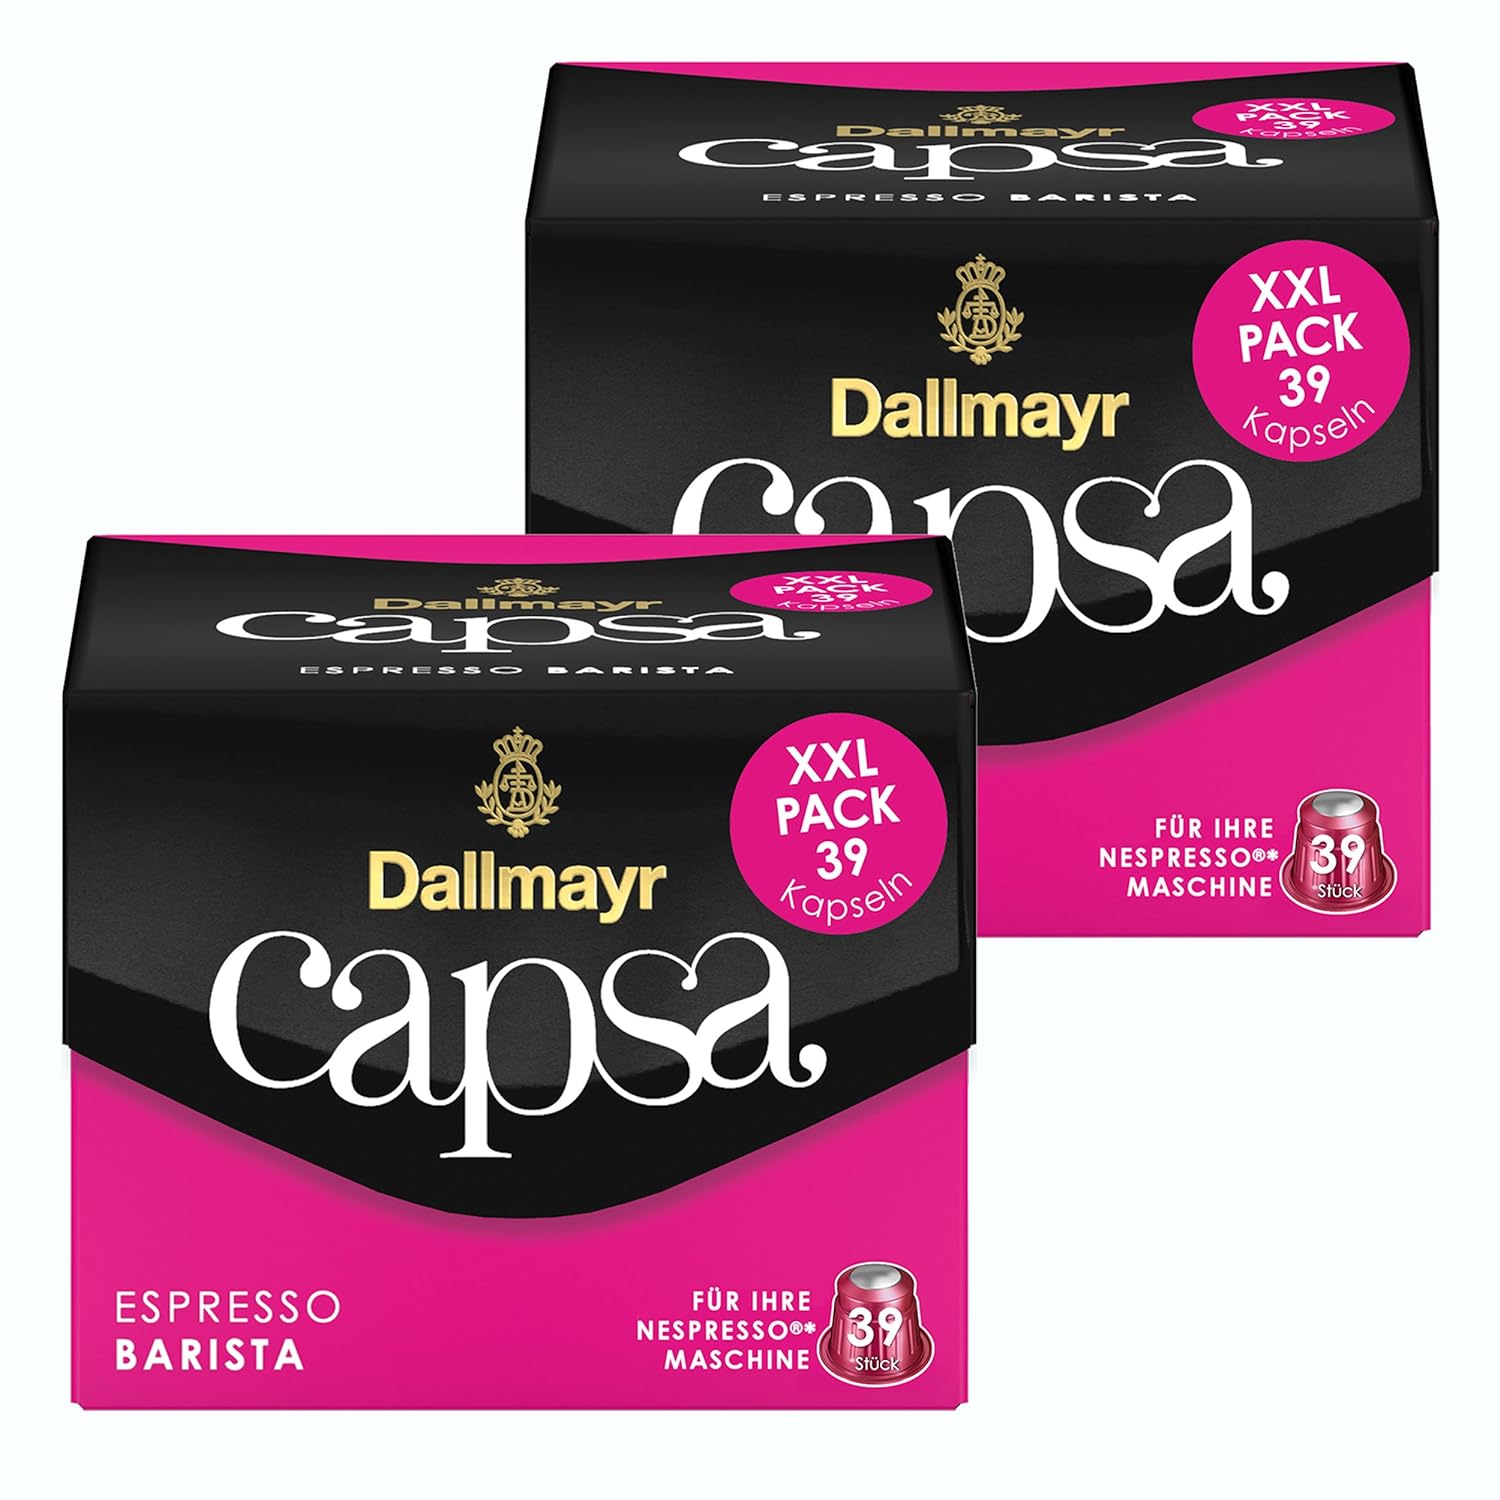 Dallmayr Capsa Espresso Barista XXL, Nespresso Compatible Capsule, Roasted Coffee, 78 Capsules of 5.6 g